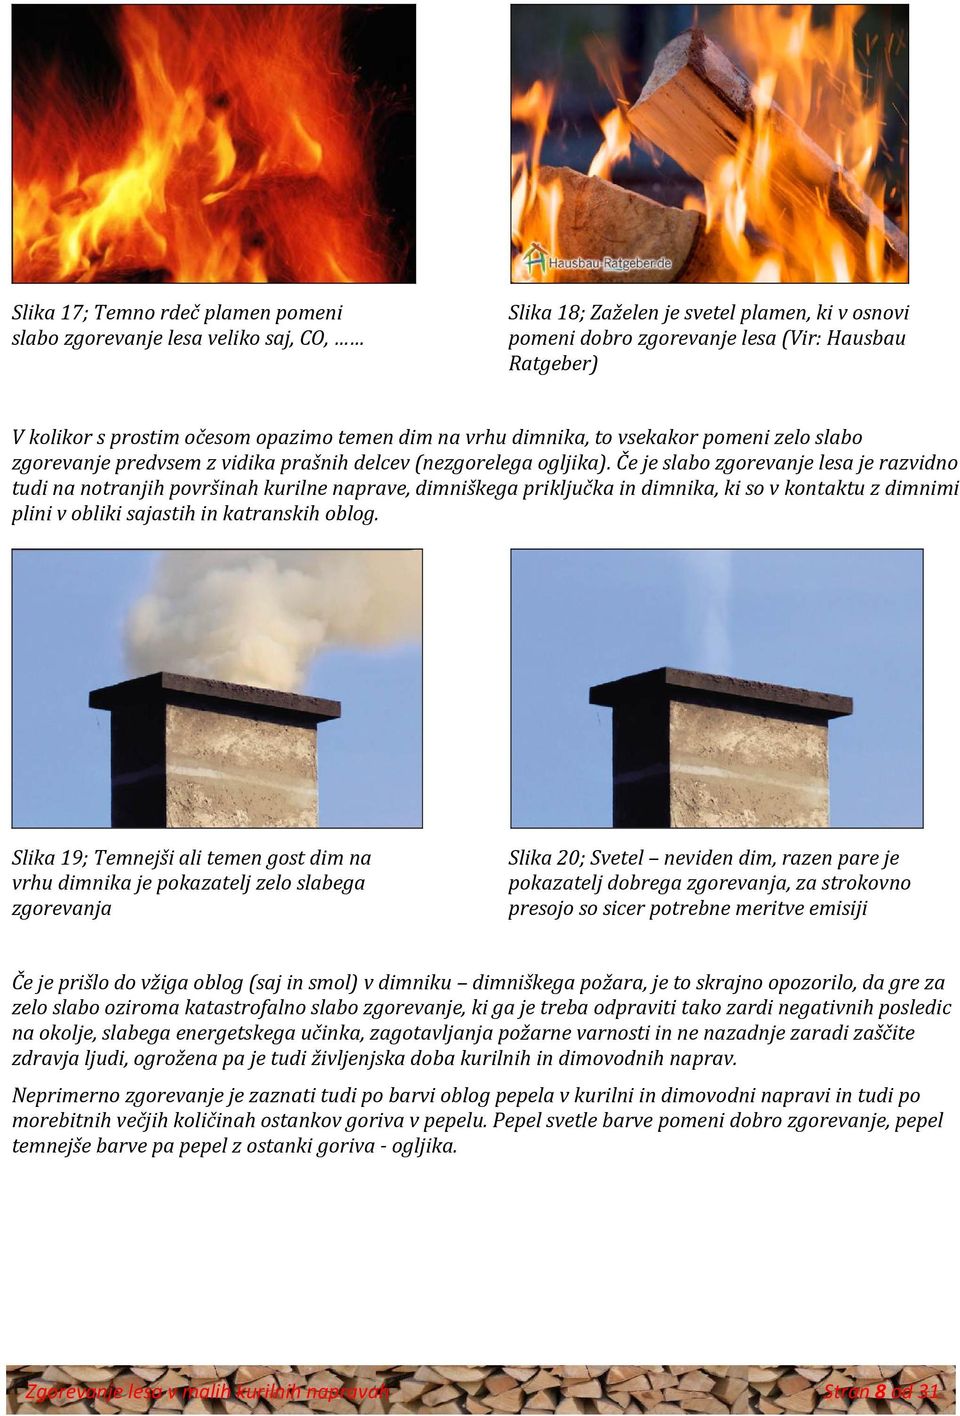 Če je slabo zgorevanje lesa je razvidno tudi na notranjih površinah kurilne naprave, dimniškega priključka in dimnika, ki so v kontaktu z dimnimi plini v obliki sajastih in katranskih oblog.